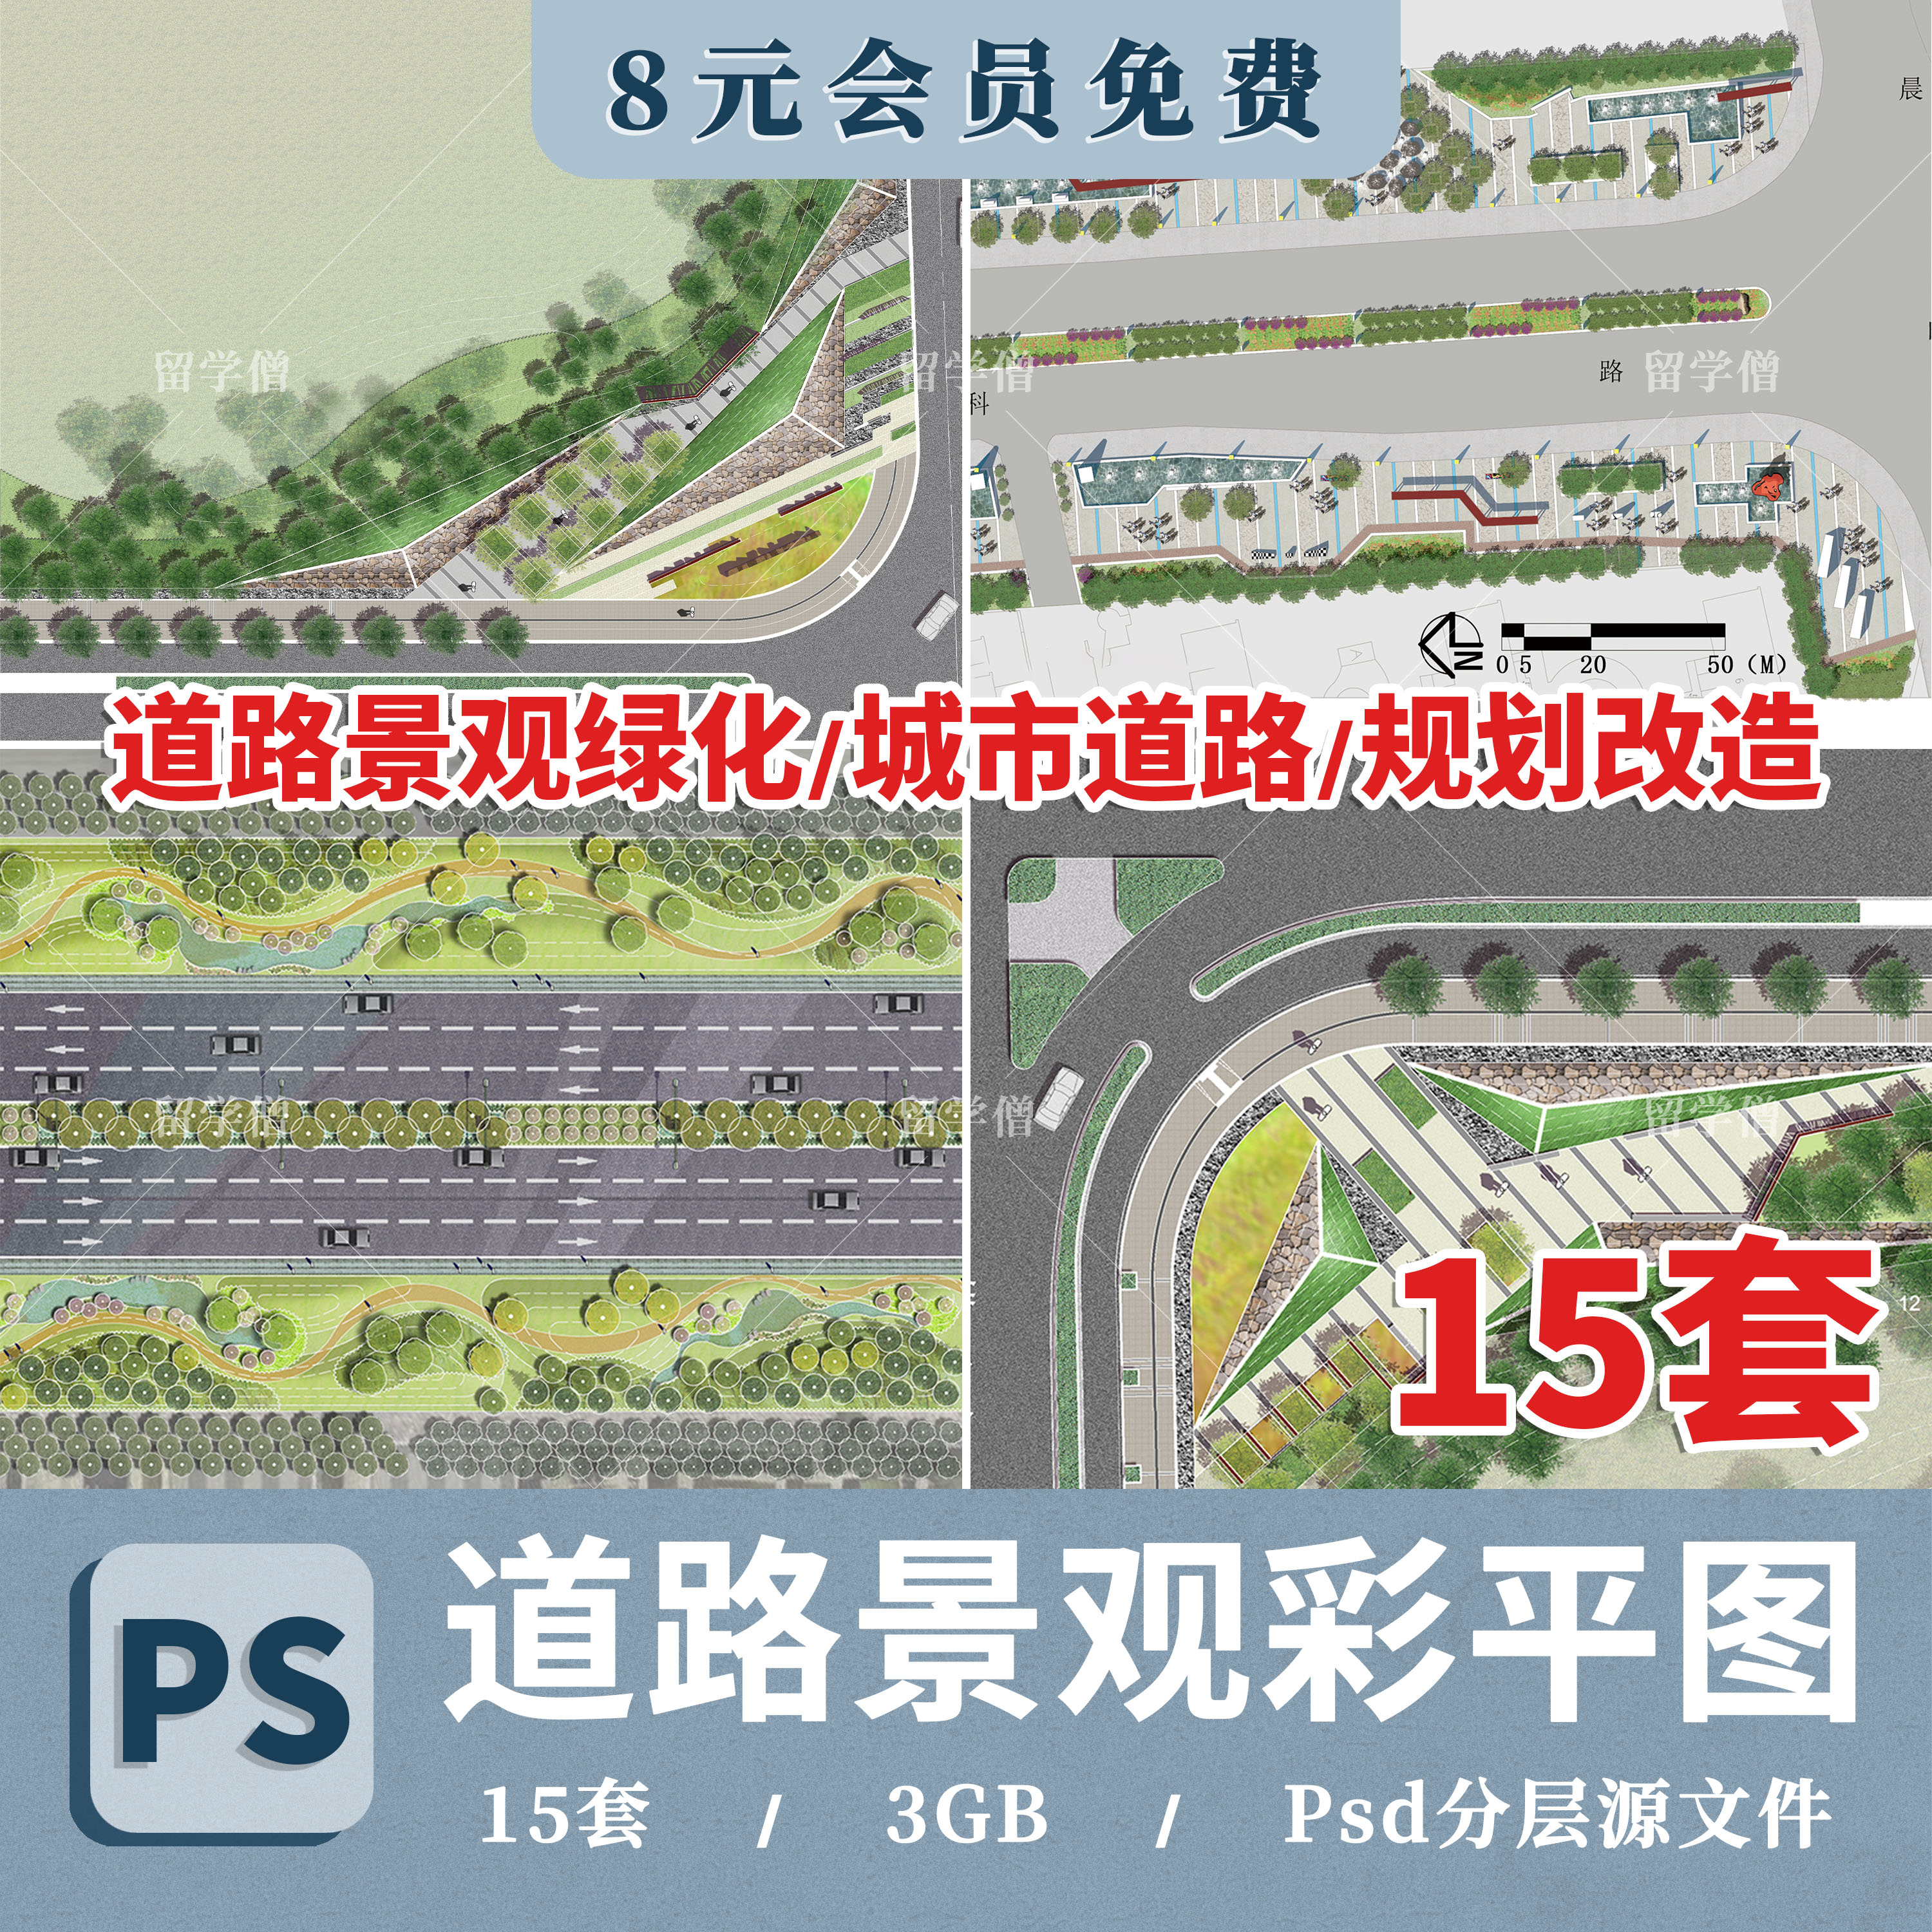 道路景观绿化PSD彩平图城市道路规划改造设计彩色平面图PS素材库